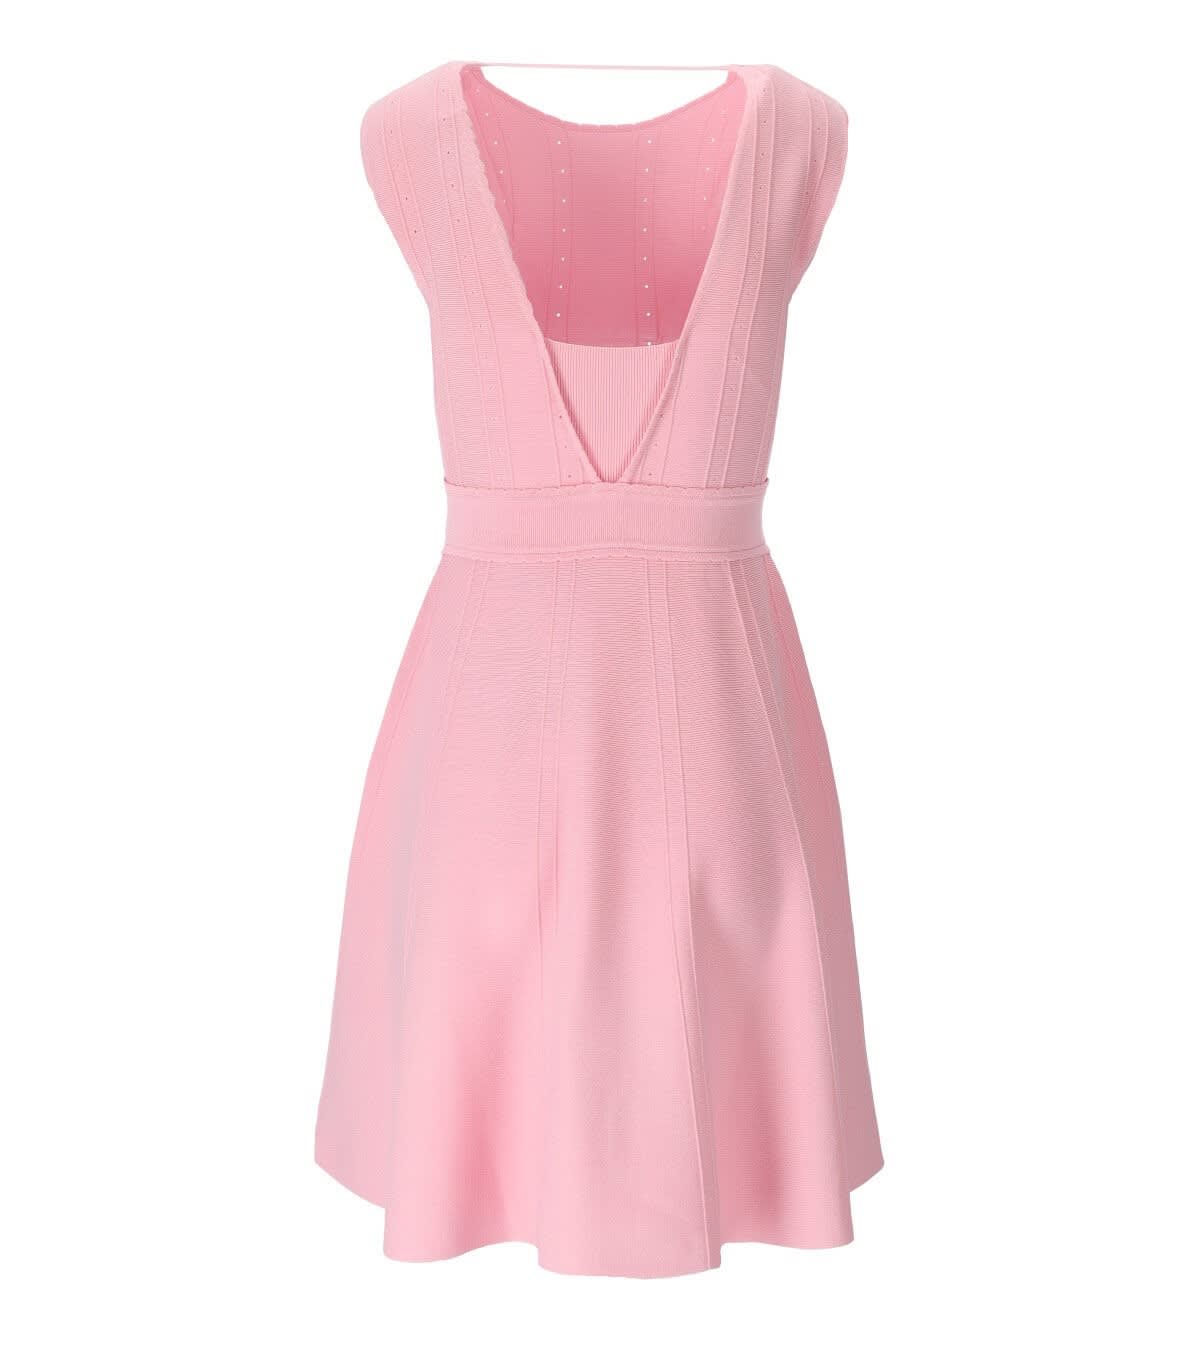 Shop Blugirl Pink Knitted Dress